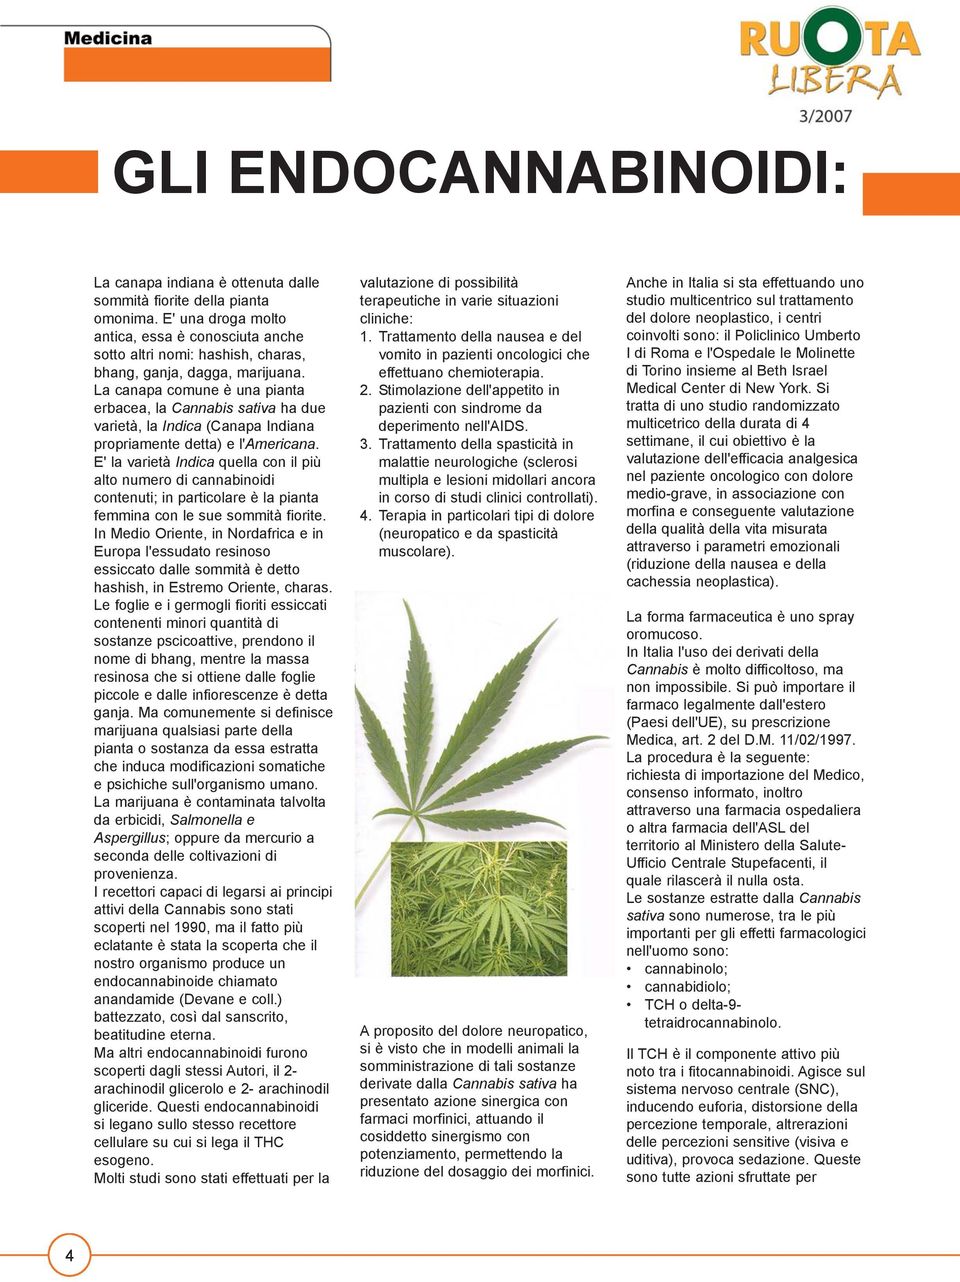 La canapa comune è una pianta erbacea, la Cannabis sativa ha due varietà, la Indica (Canapa Indiana propriamente detta) e l'americana.